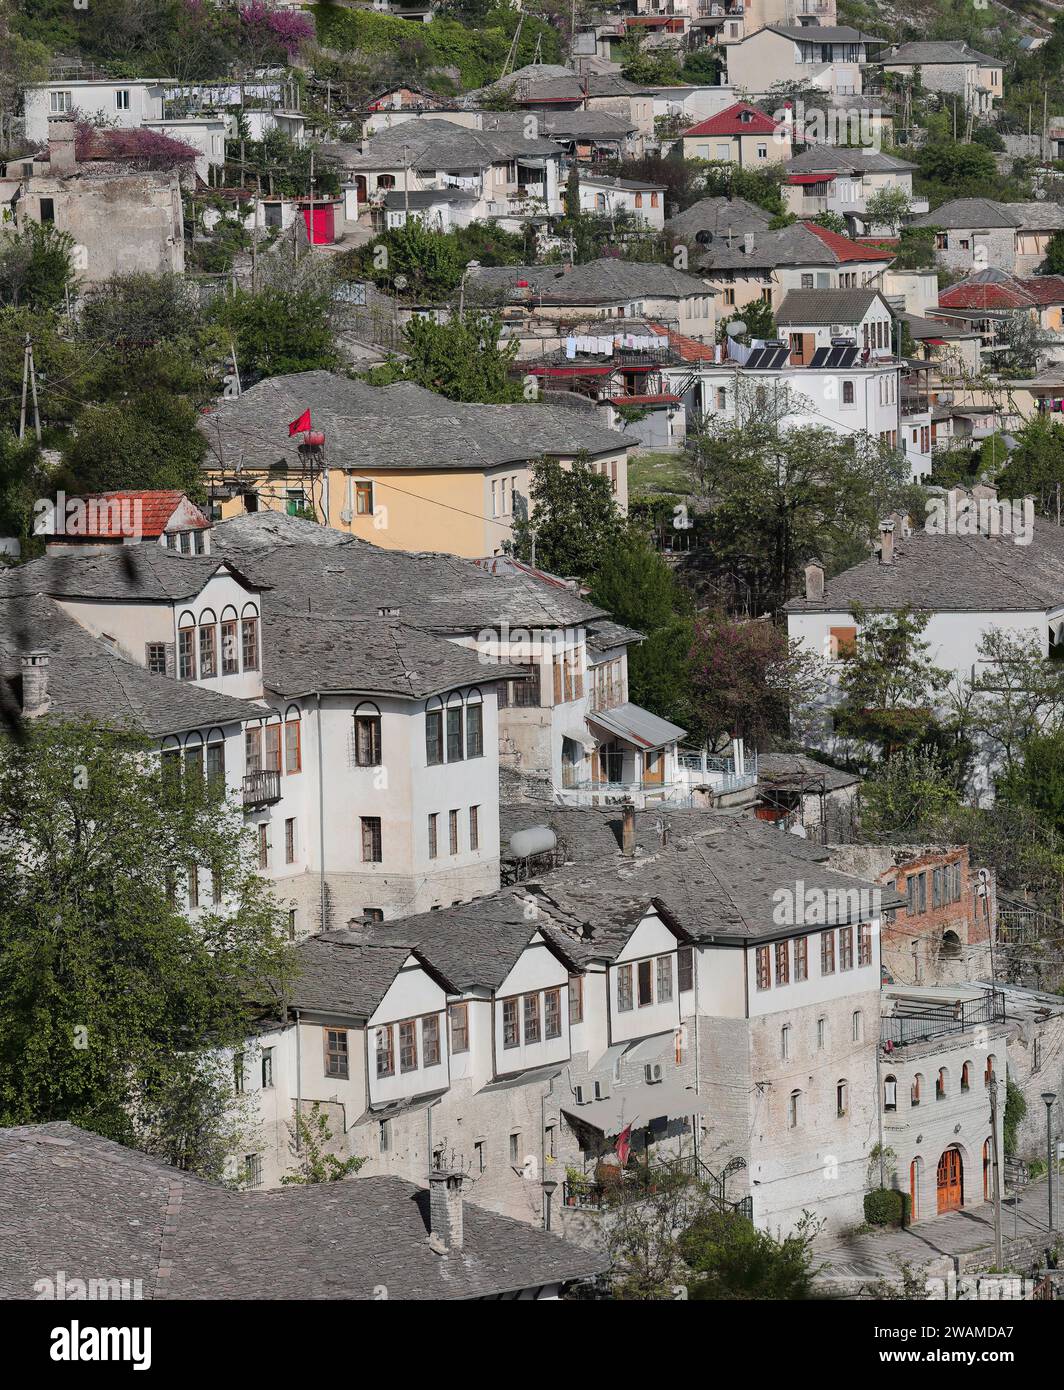 192 abitazioni in stile ottomano realizzate in pietra sul pendio giù per la collina di fronte alla cittadella da nord-ovest. Gjirokaster-Albania. Foto Stock